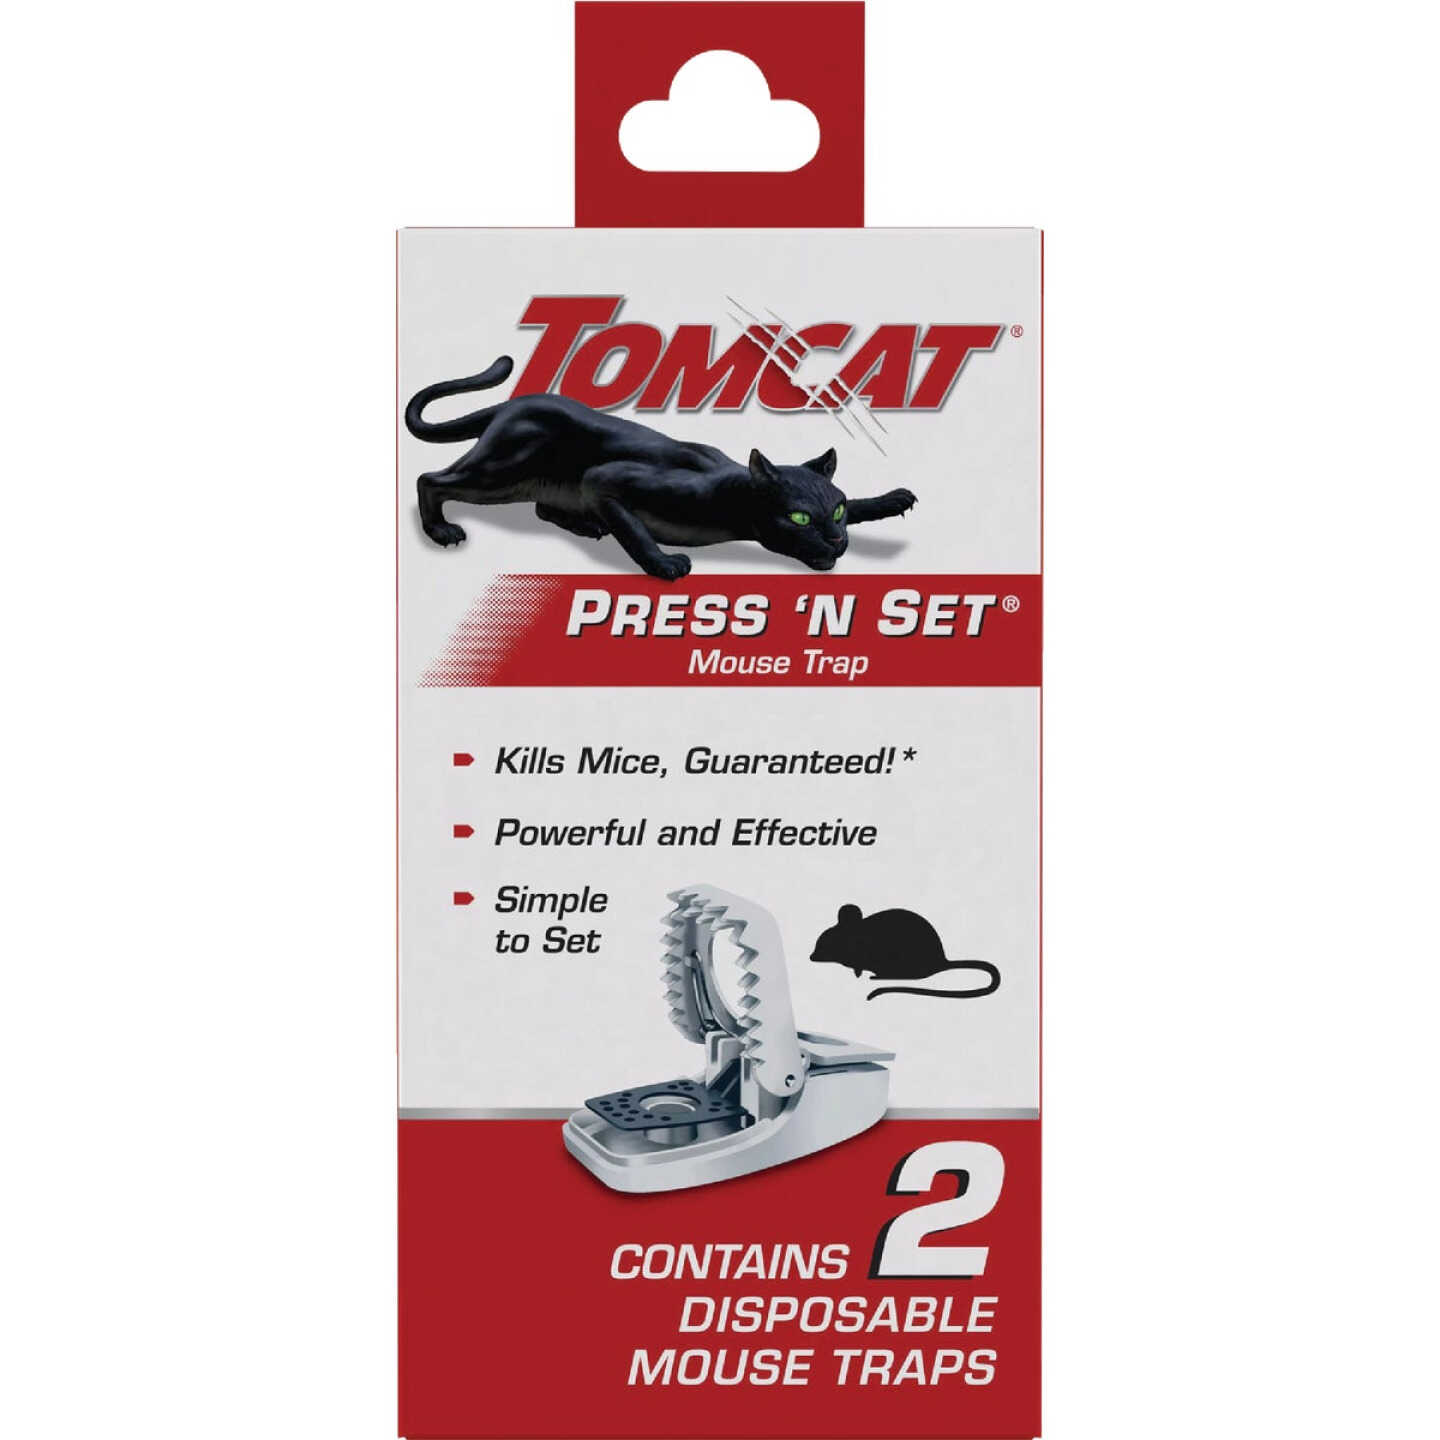 Tomcat Mouse Traps, Press 'N Set - 2 traps